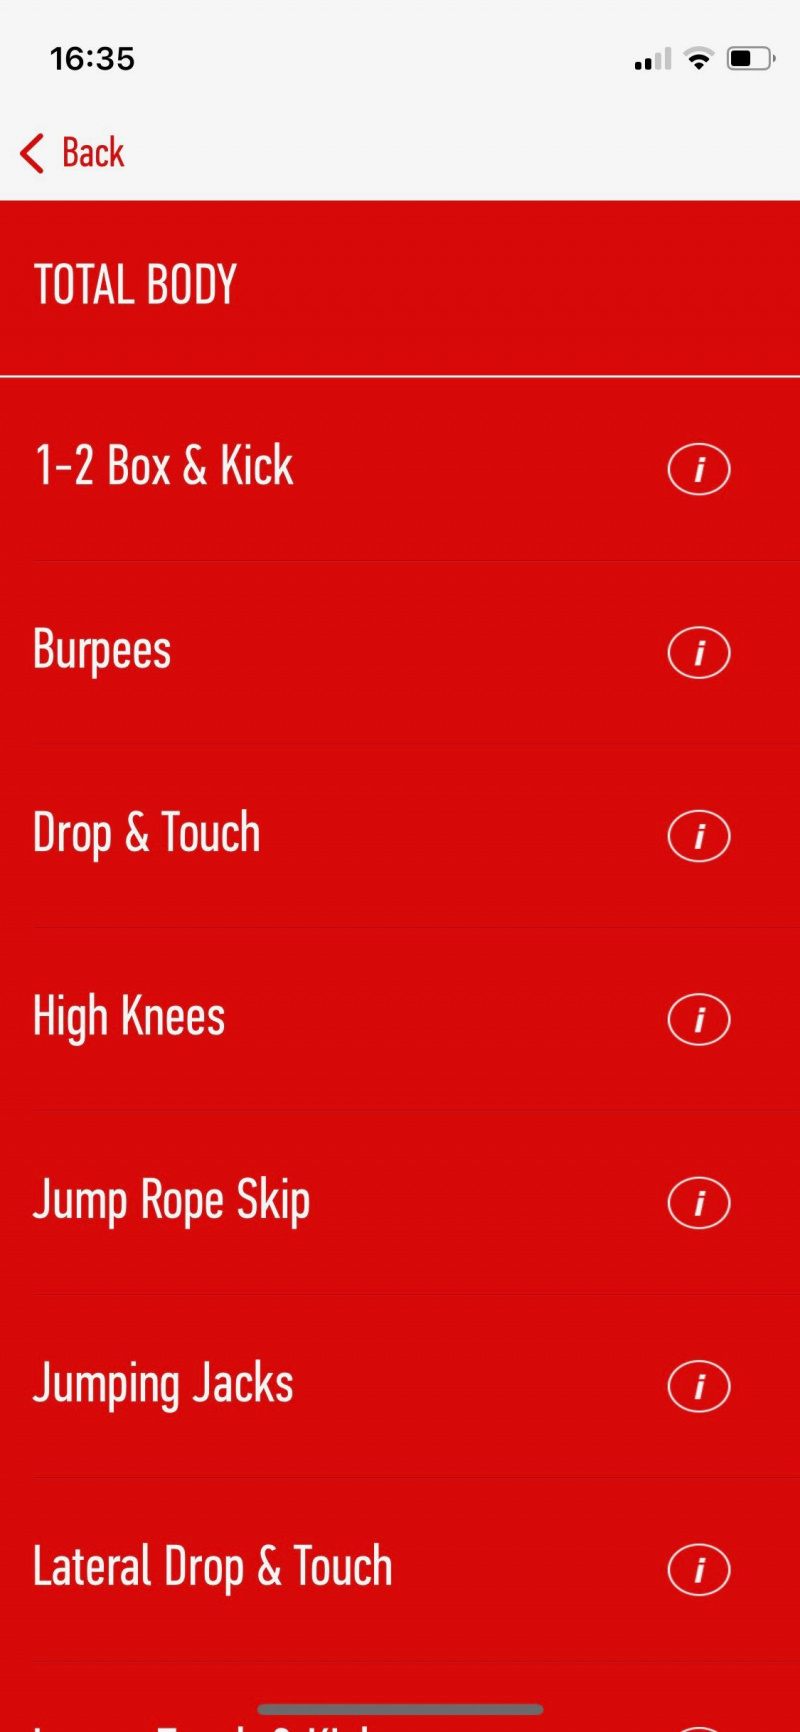   Snímka obrazovky aplikácie J&J 7 minút zobrazujúca príklad cvičebnej rutiny